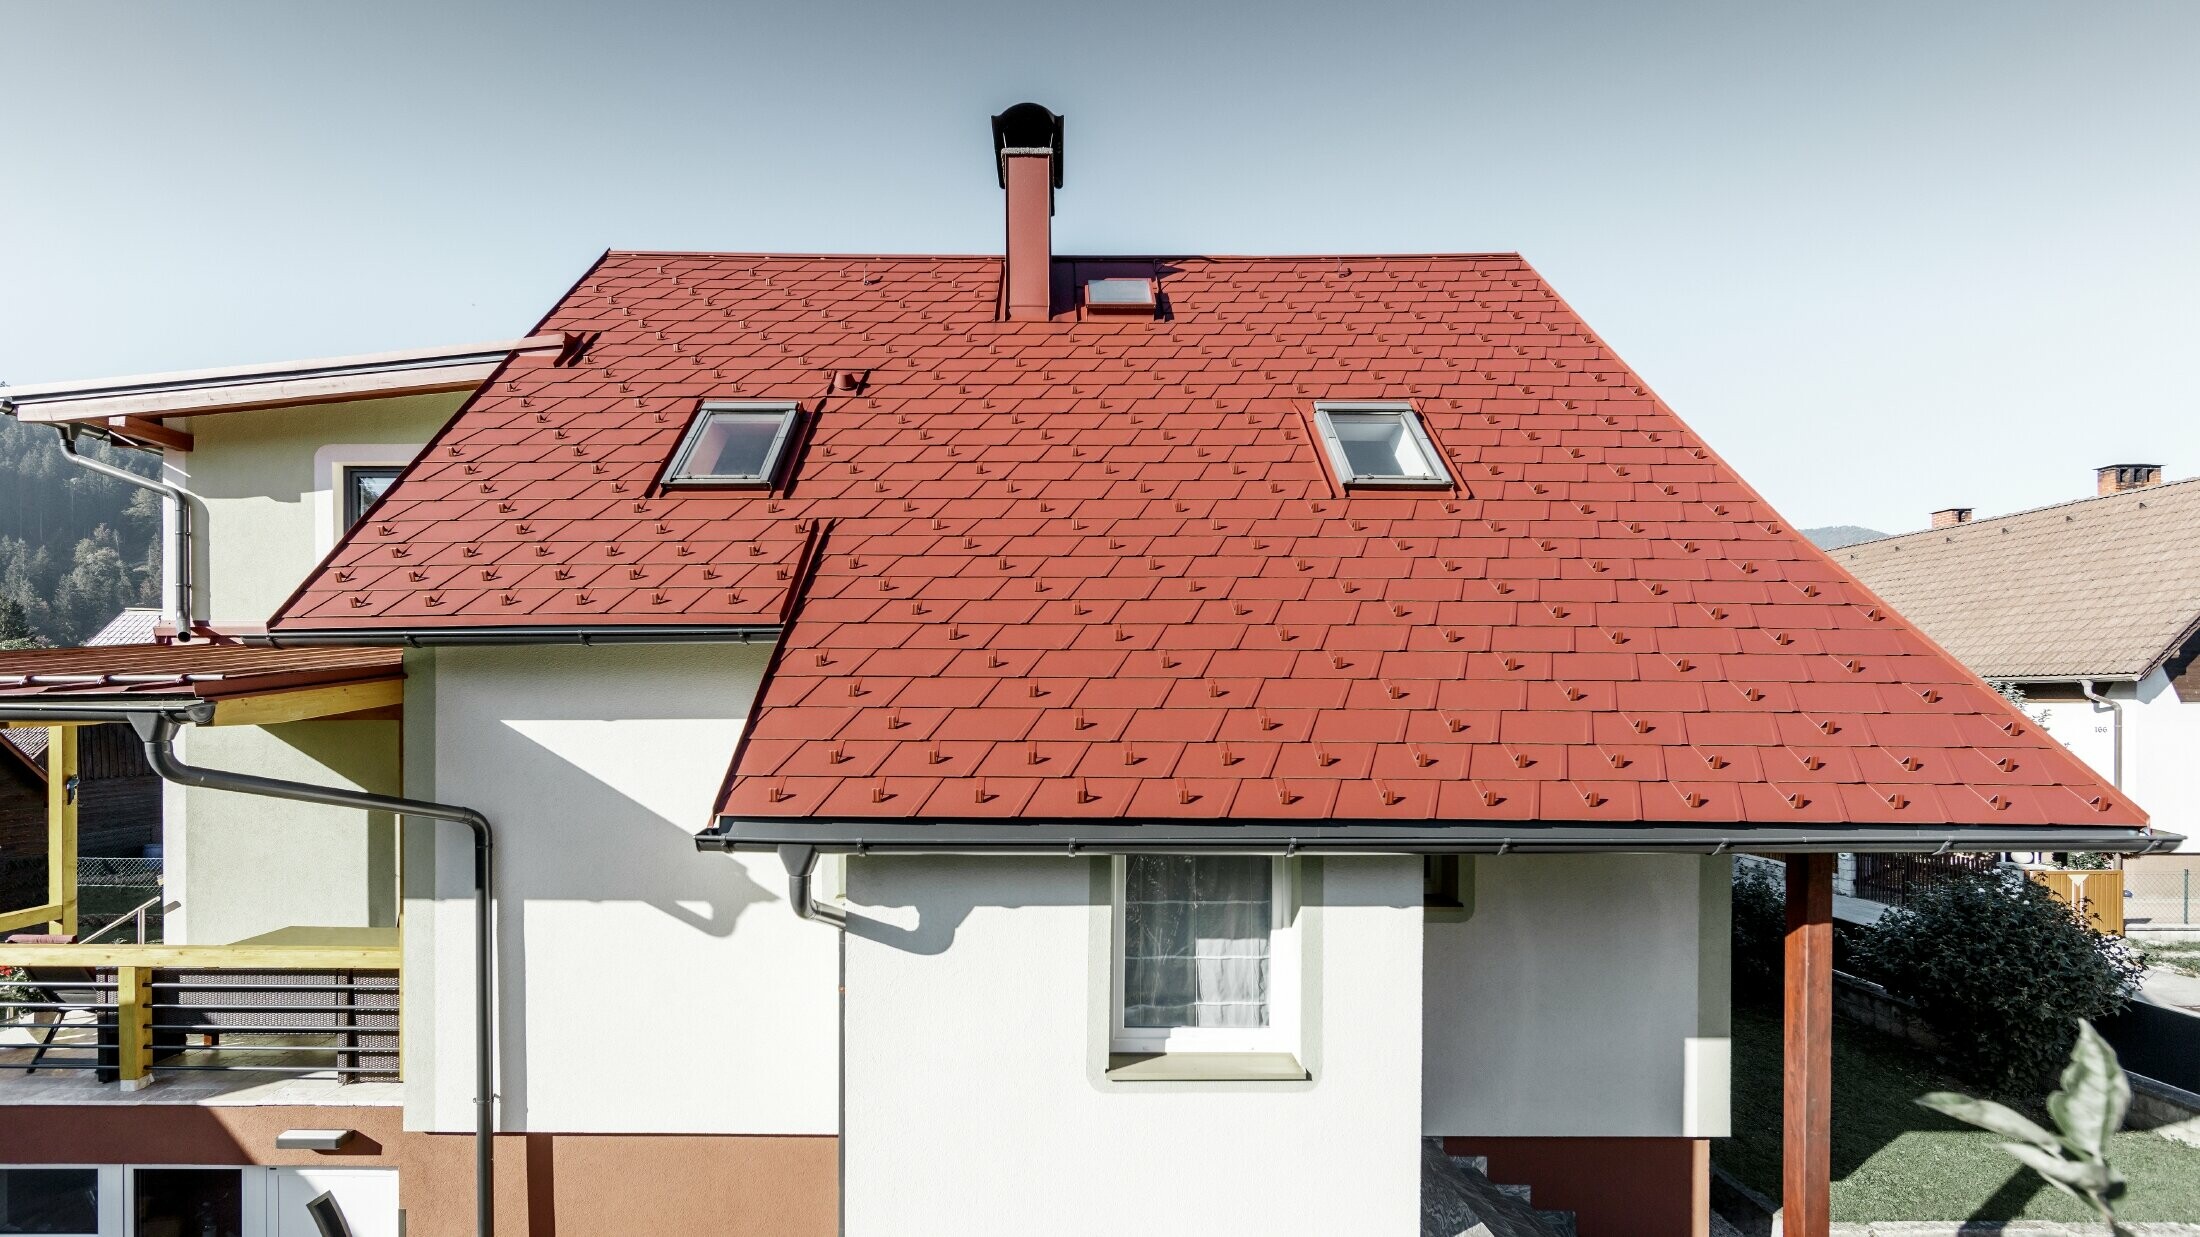 Sanirana obiteljska kuća s novim krovom od krovne šindre, položena je šindra DS.19 u boji oksid crvena.